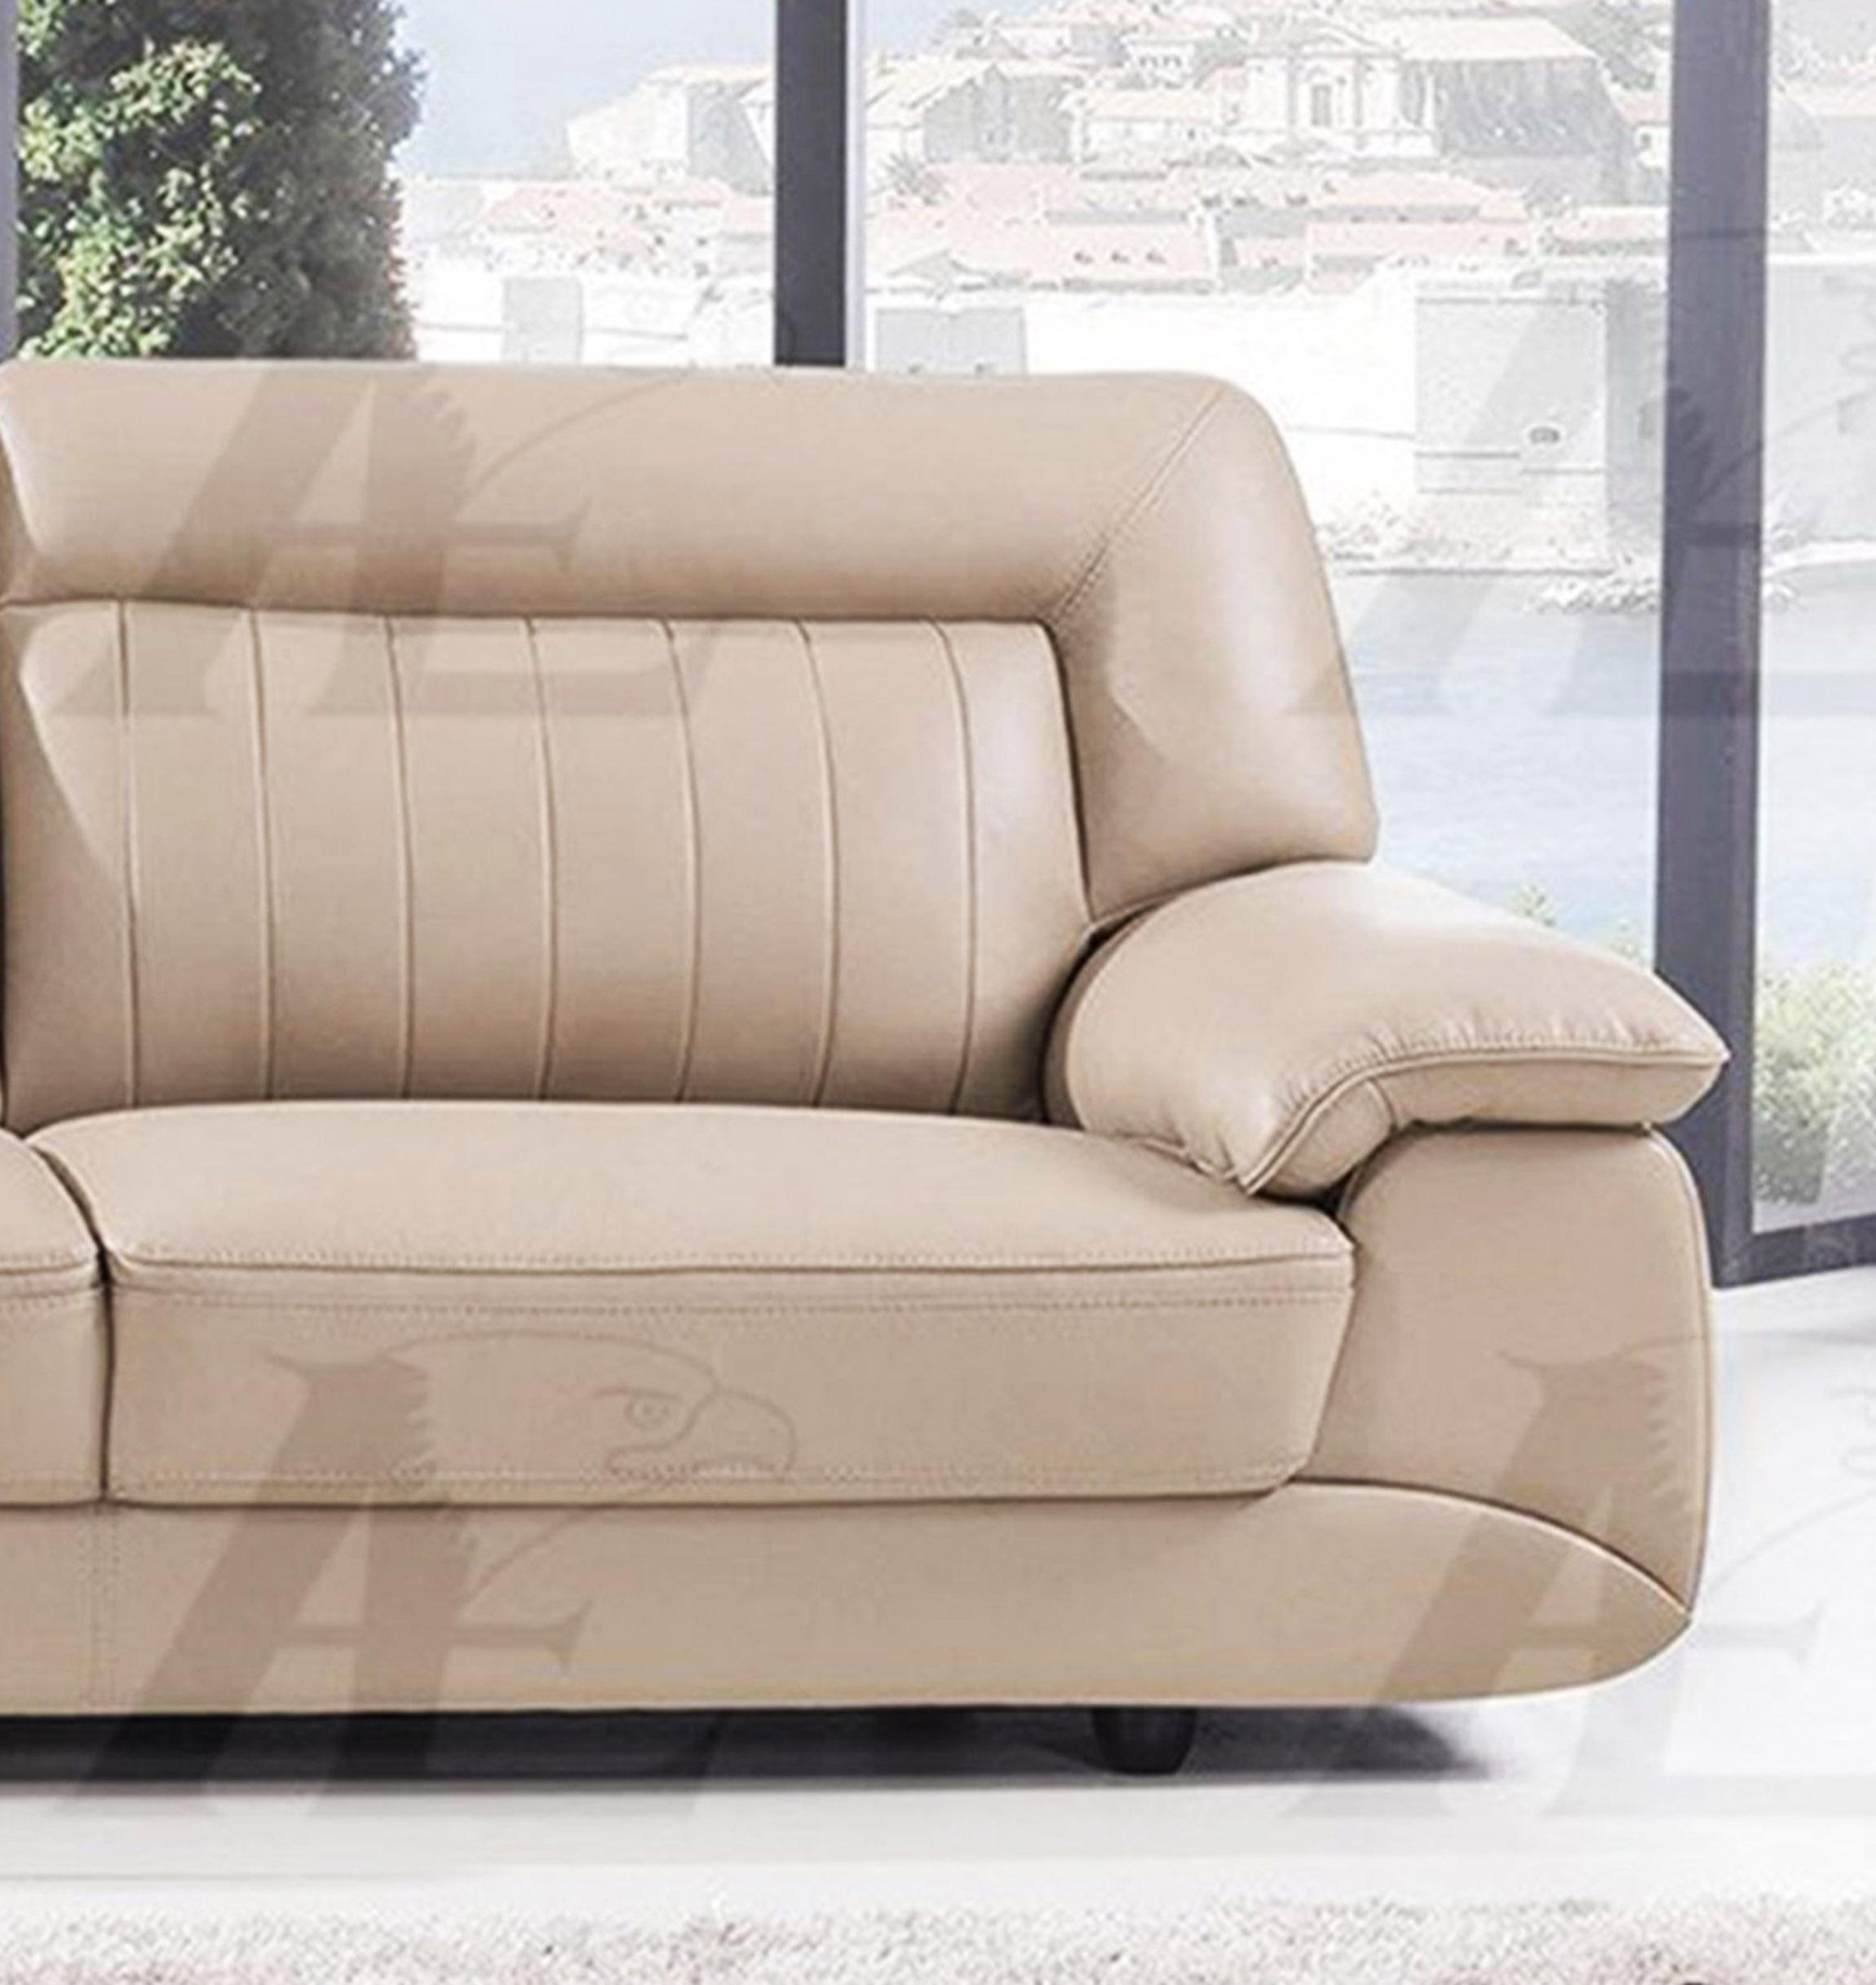 

    
American Eagle Furniture EK072-TAN Sofa Tan EK072-TAN
